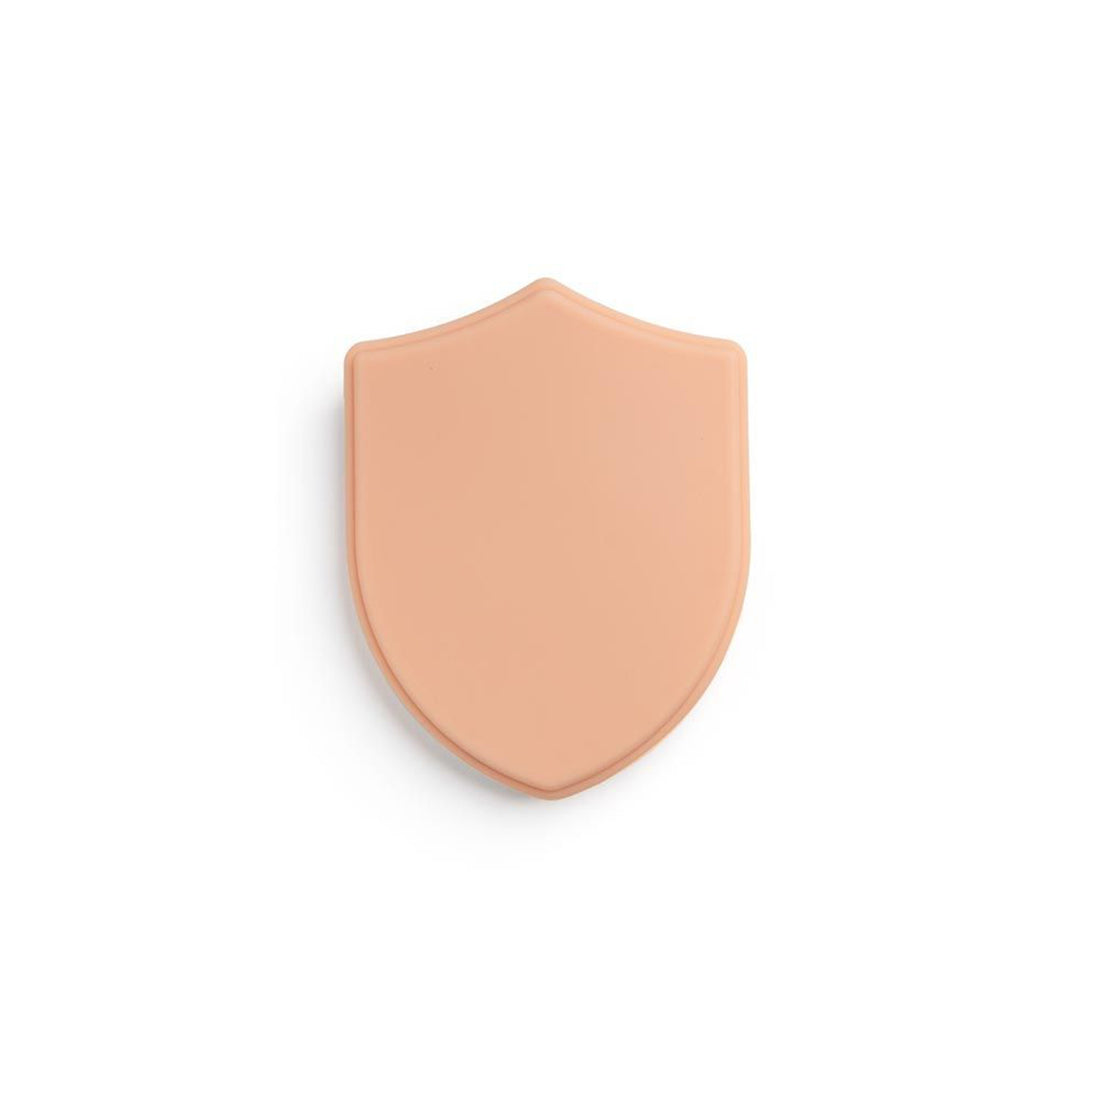 APOF Micro Series Small Shield